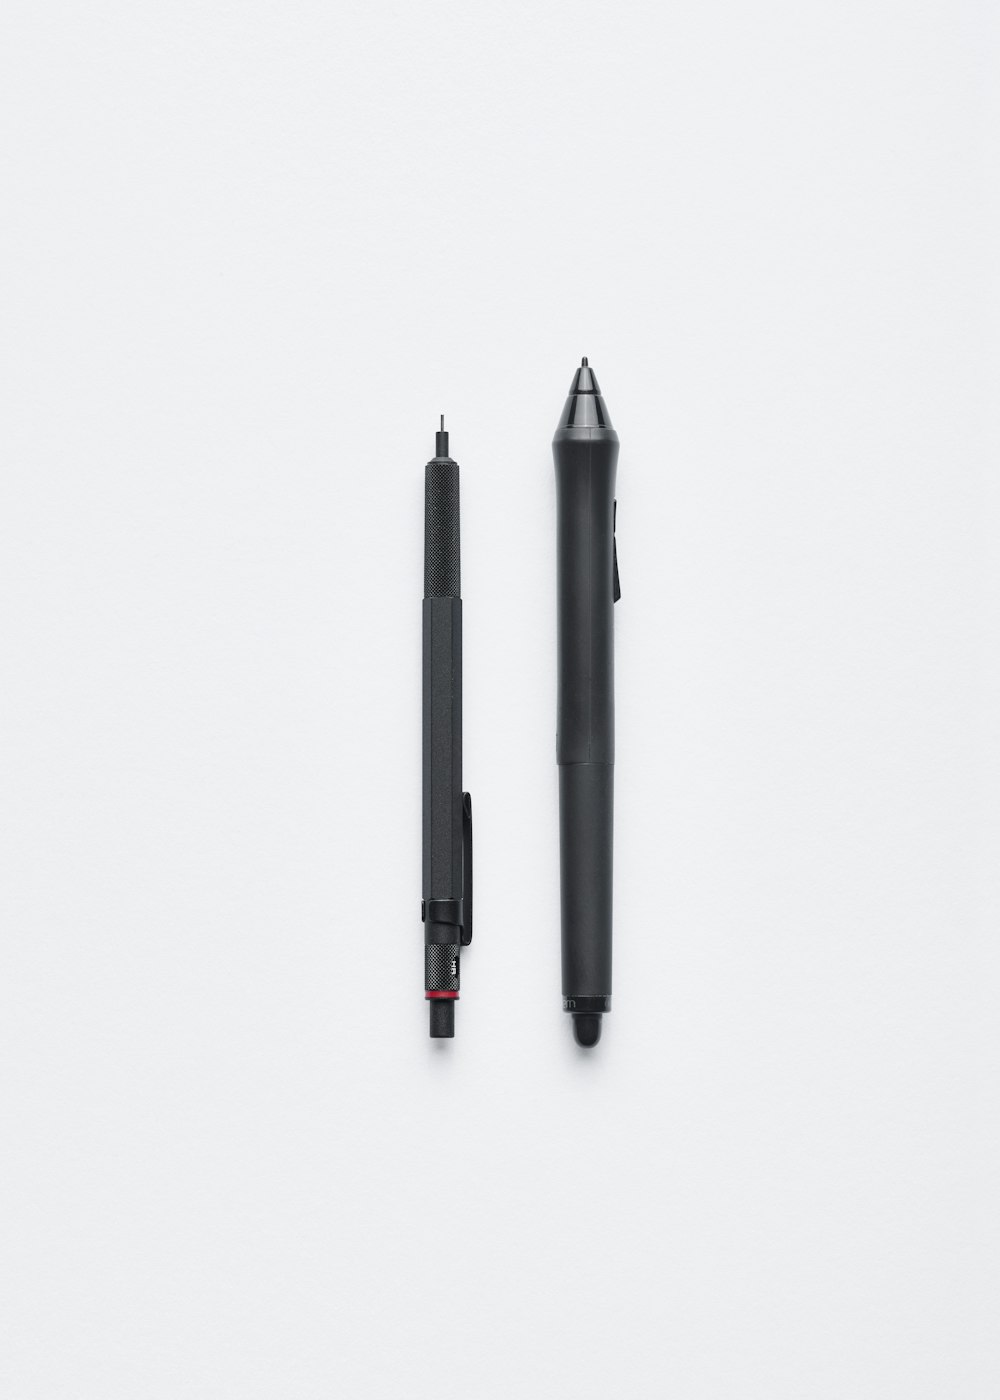 Una matita meccanica e una penna.